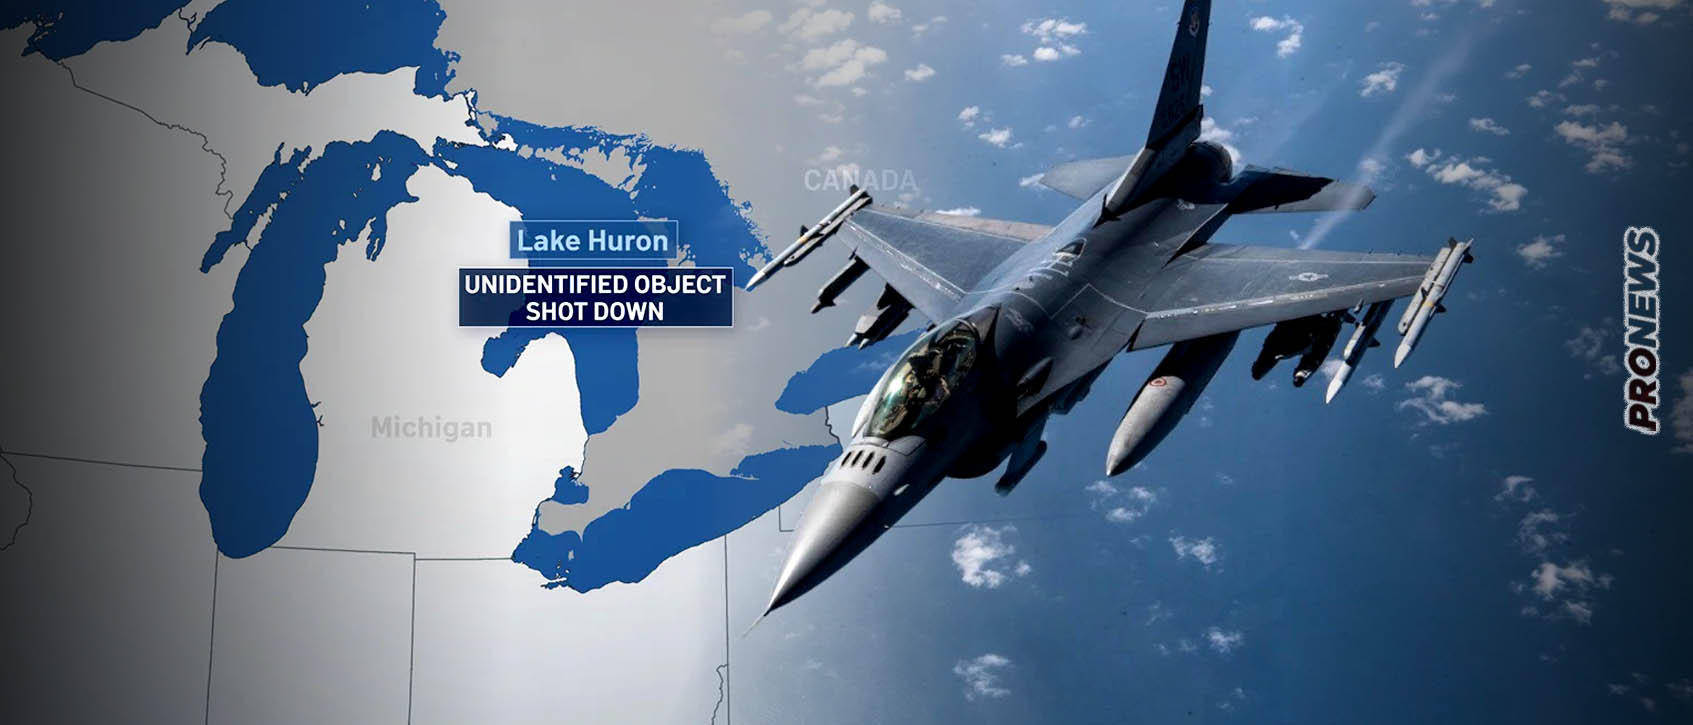 Μαχητικά F-16 της αμερικανικής Αεροπορίας κατέρριψαν άγνωστο αντικείμενο πάνω από τη λίμνη Huron